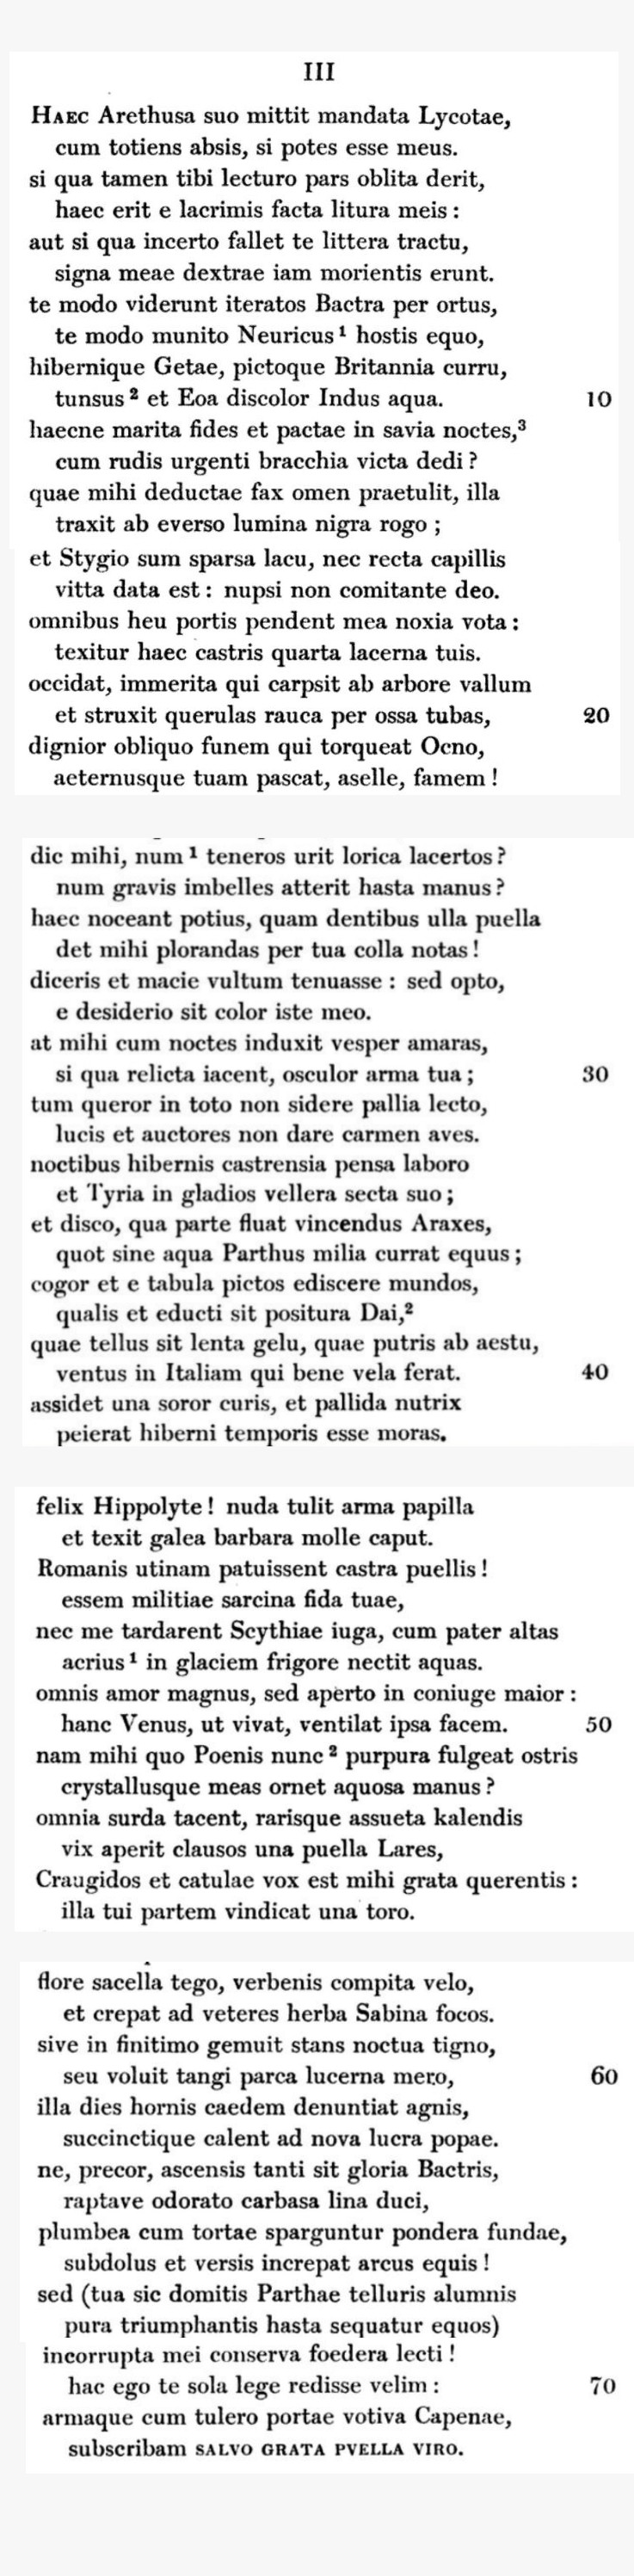 Propertius IV.3